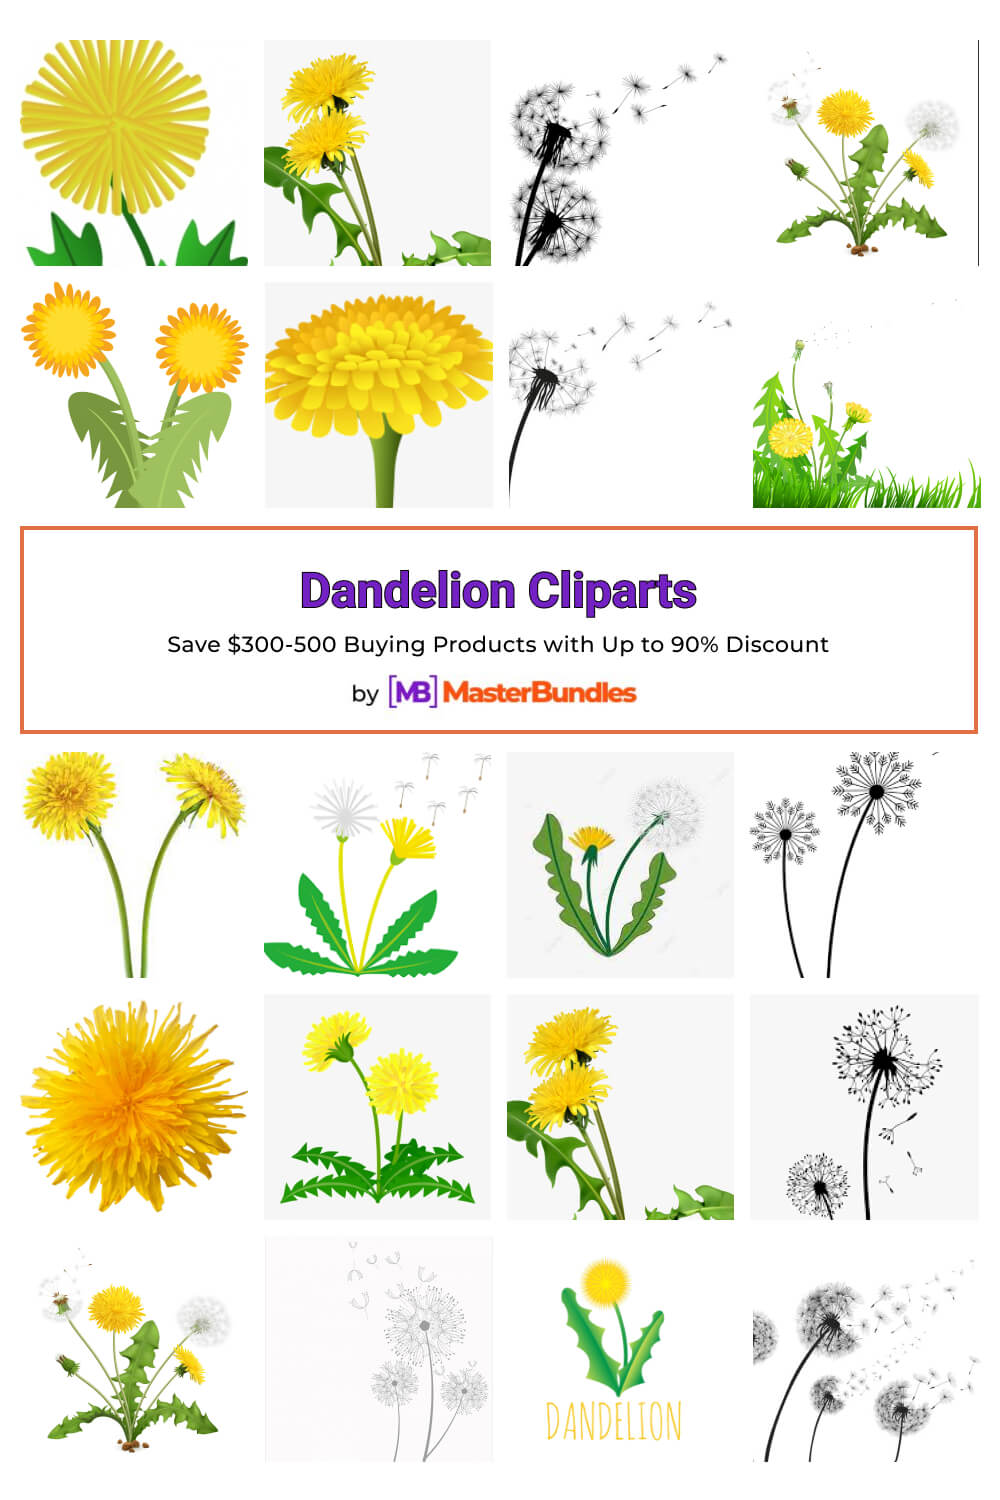 dandelion cliparts pinterest image.